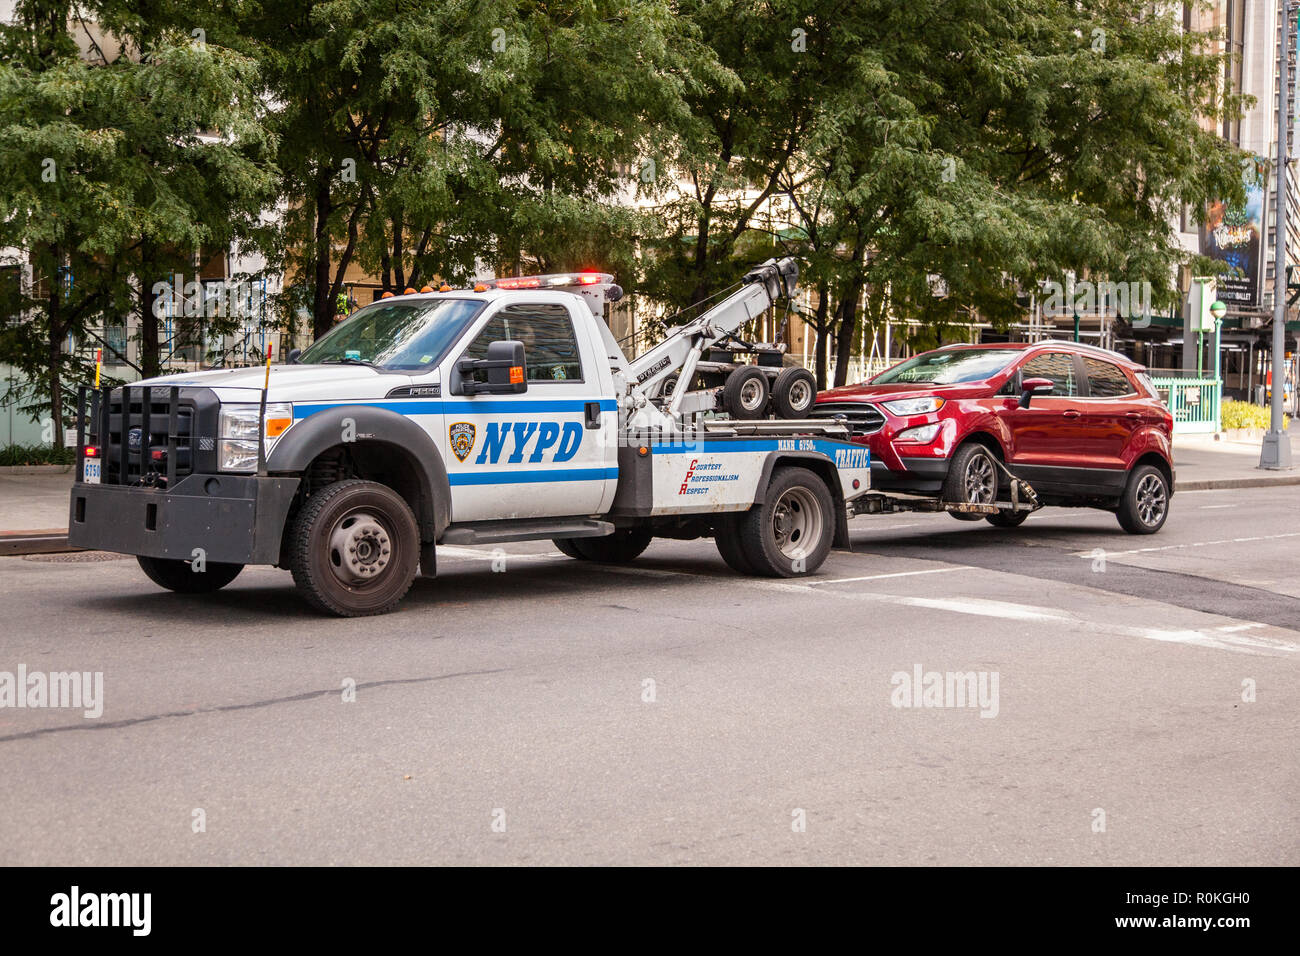 NYPD Tow Truck, Broadway, New York City, États-Unis d'Amérique. Banque D'Images